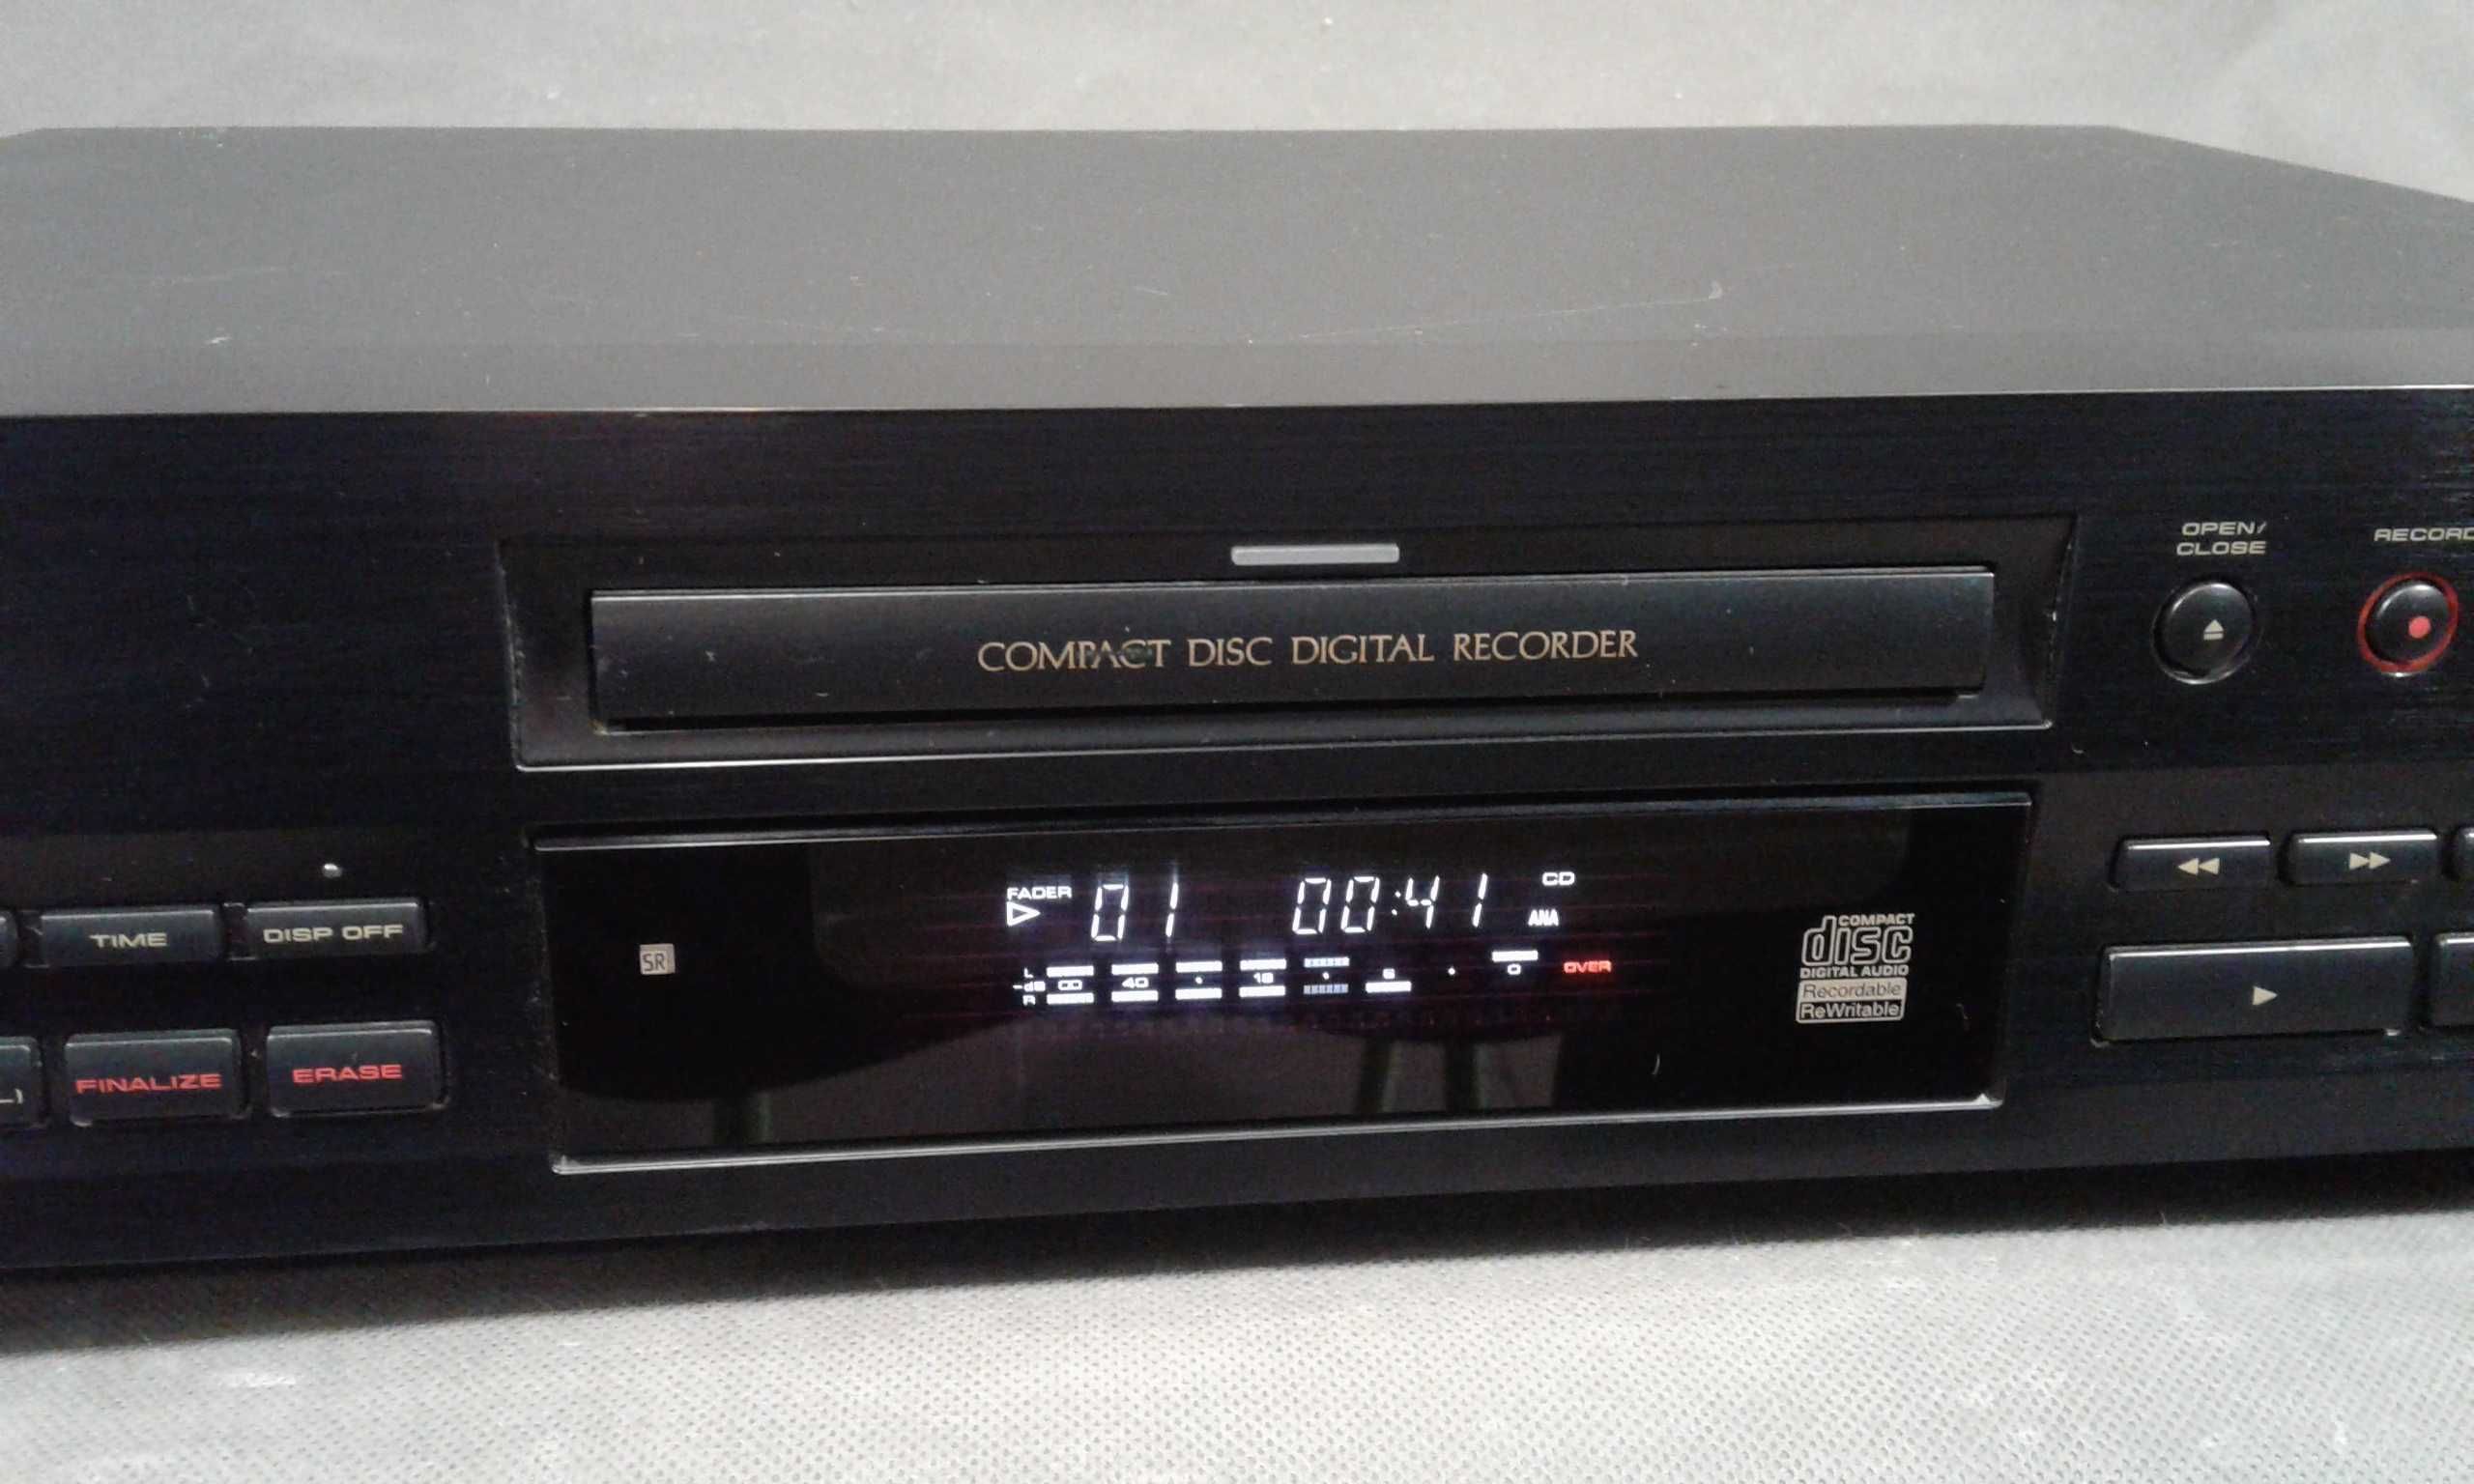 PIONEER PDR-509,nagrywarka cd audio